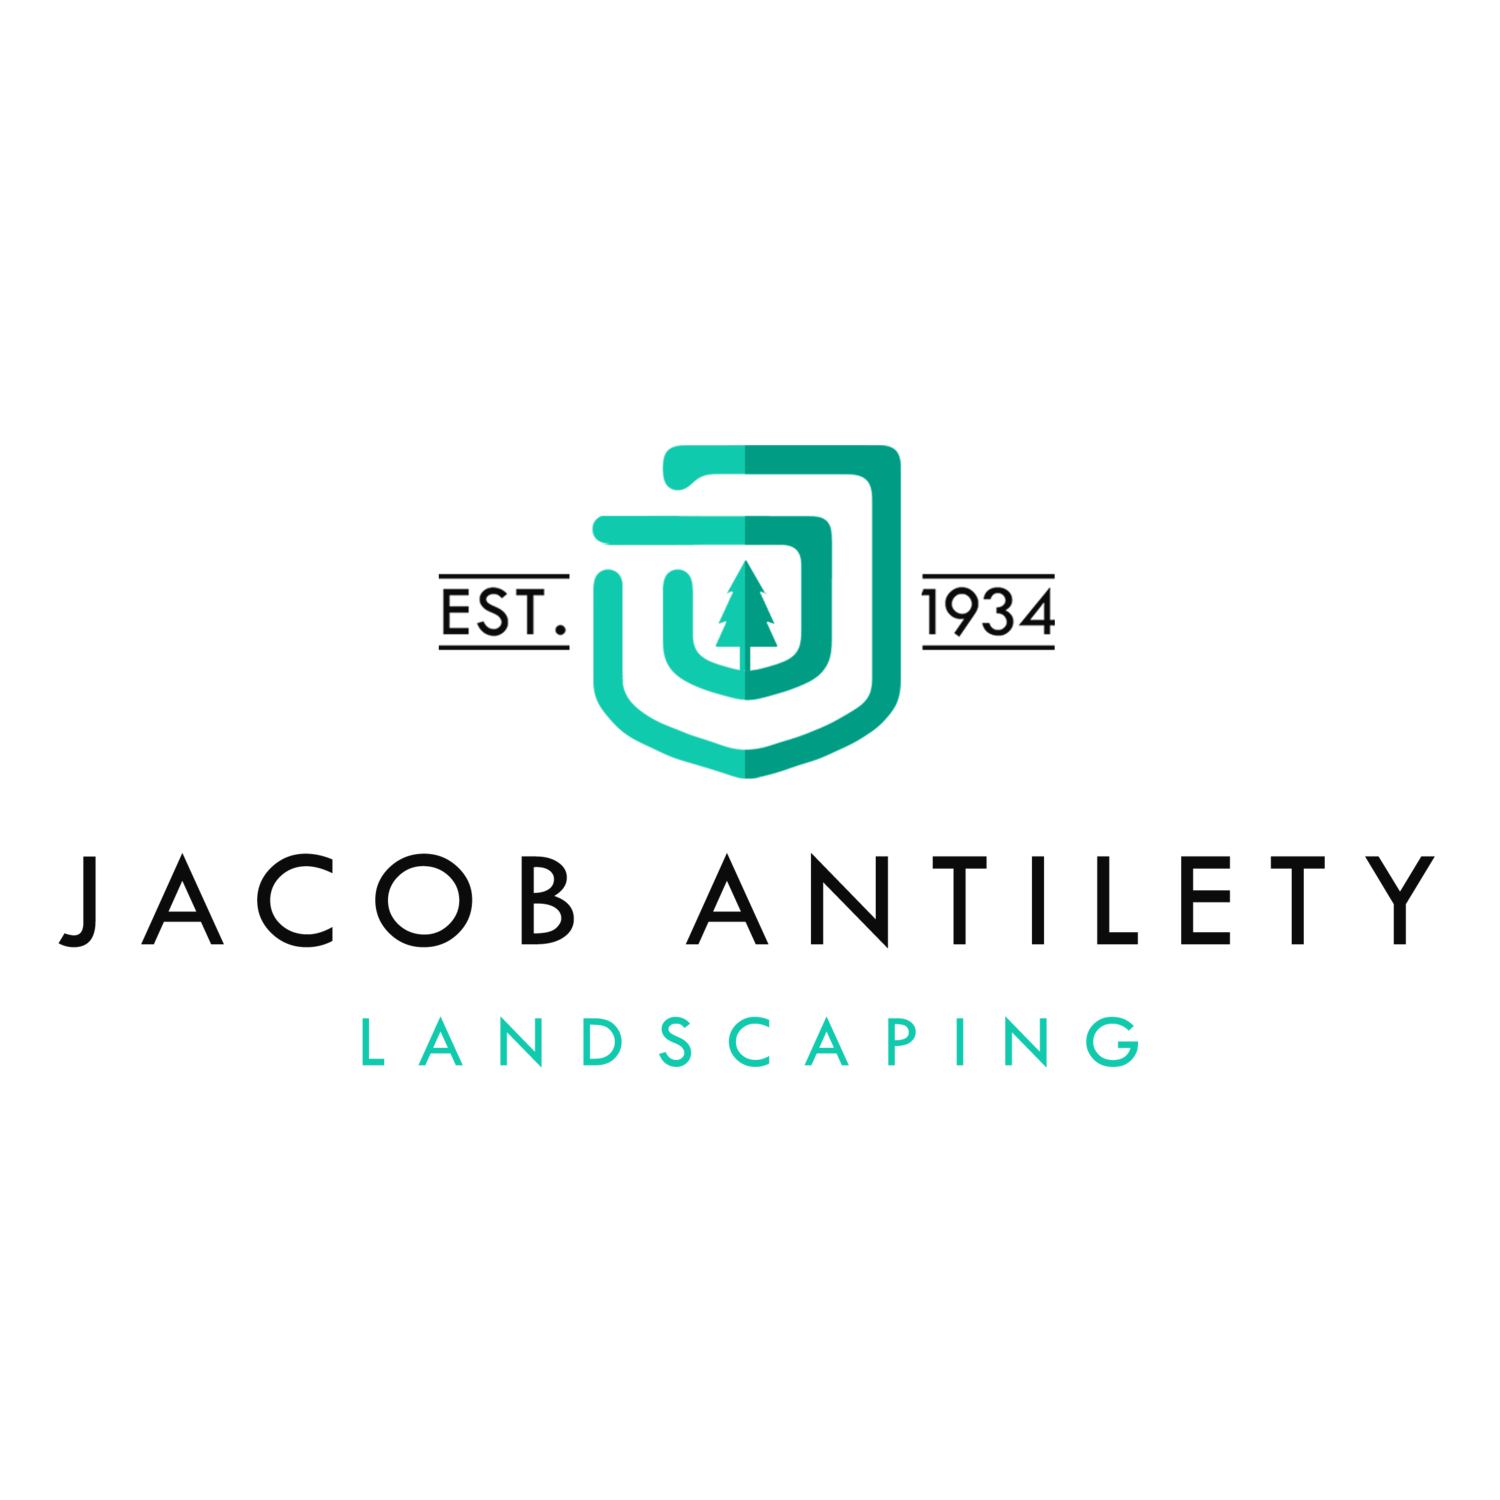 Jacob Antilety Landscaping